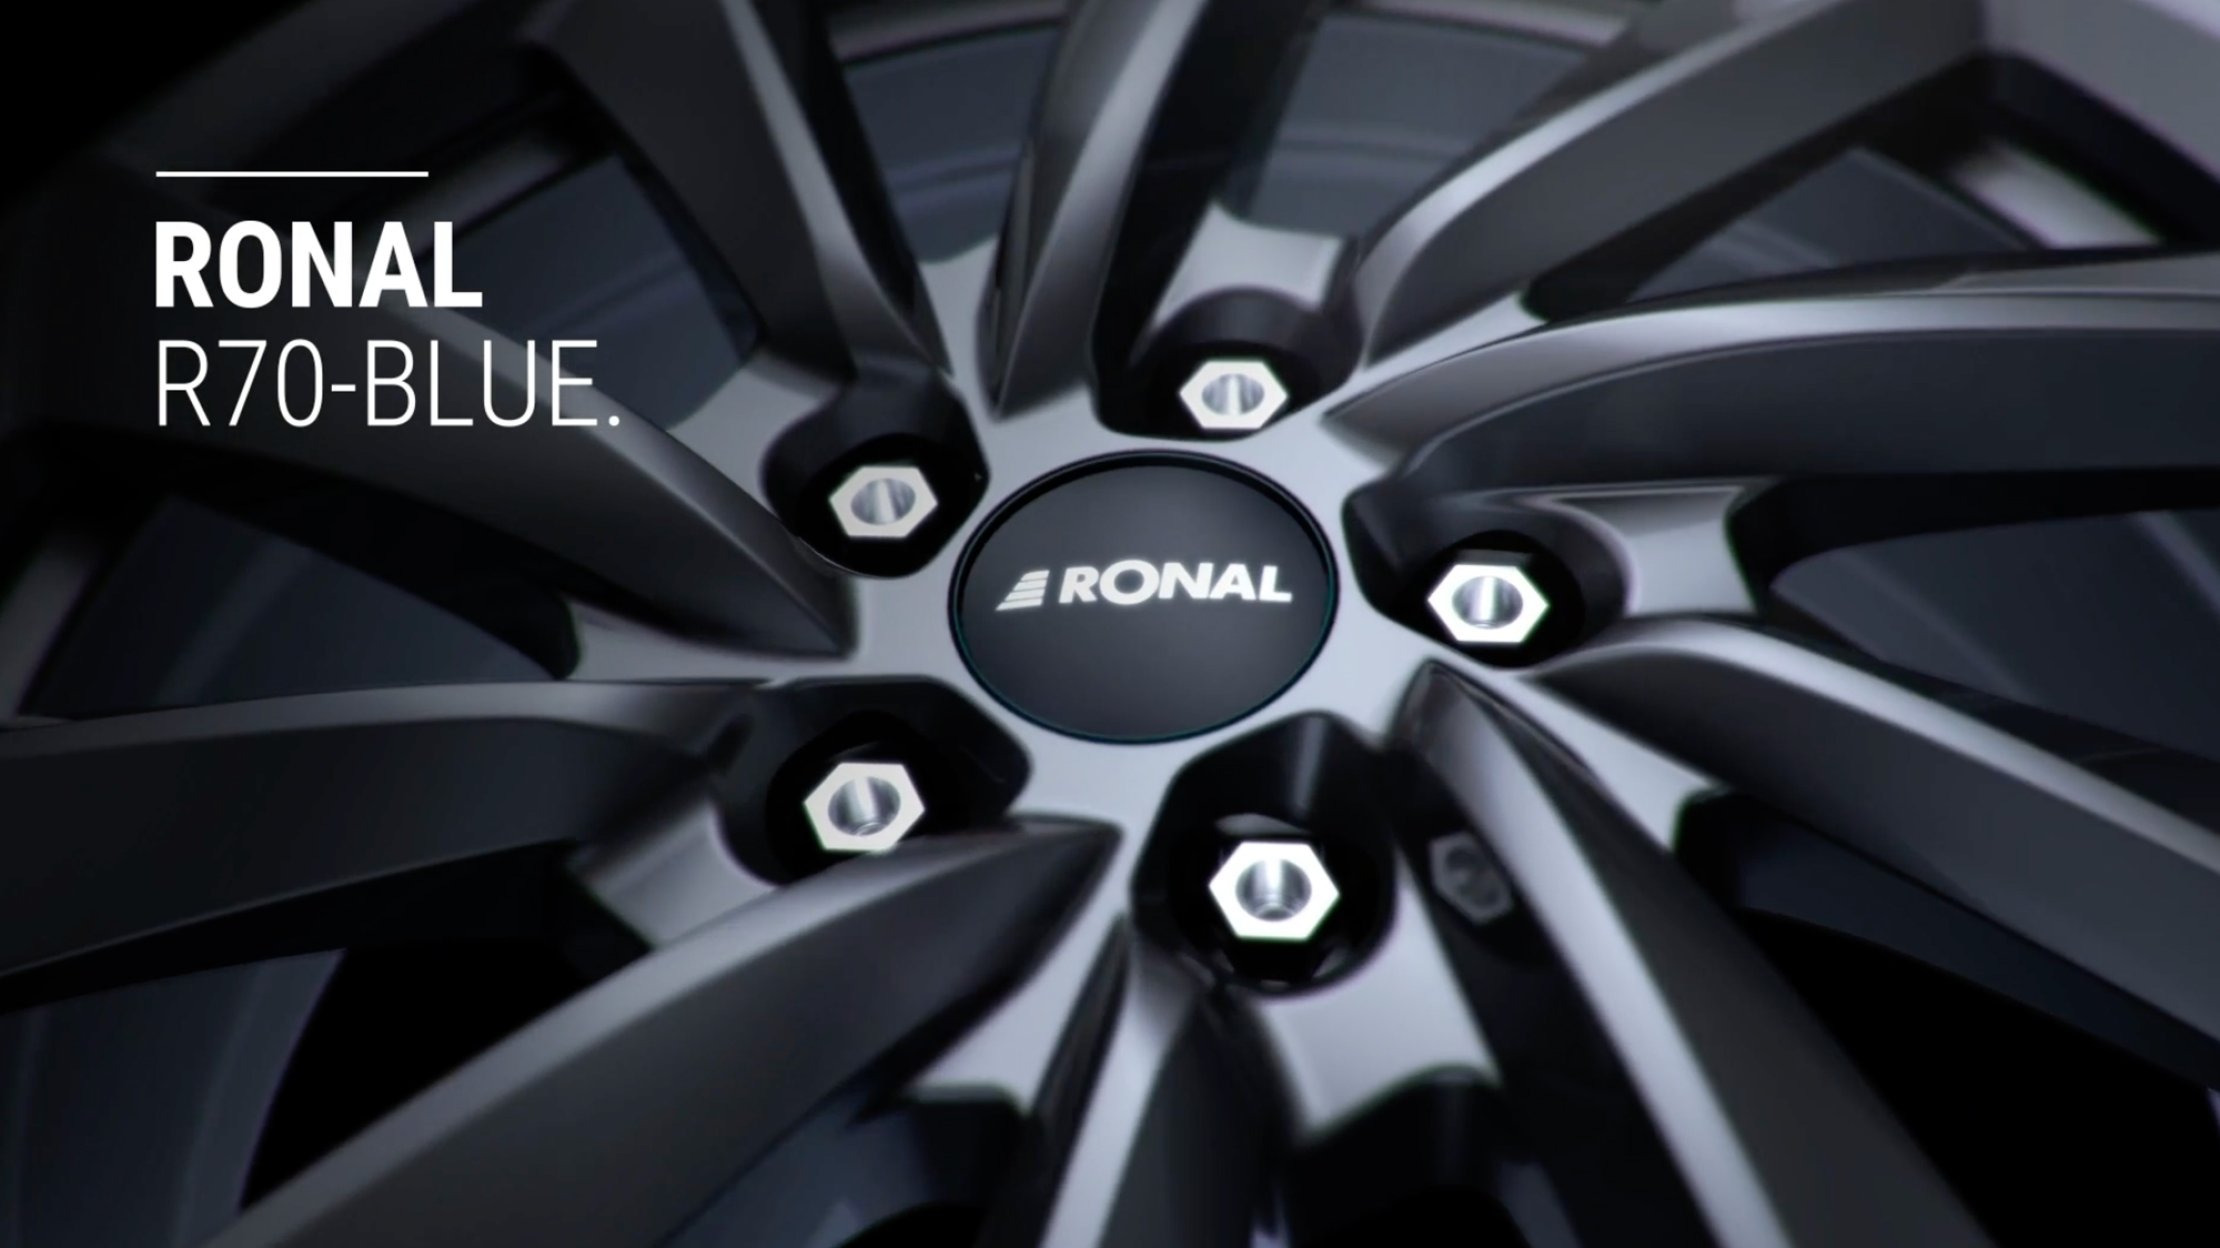 RONAL R70-blue car wheel